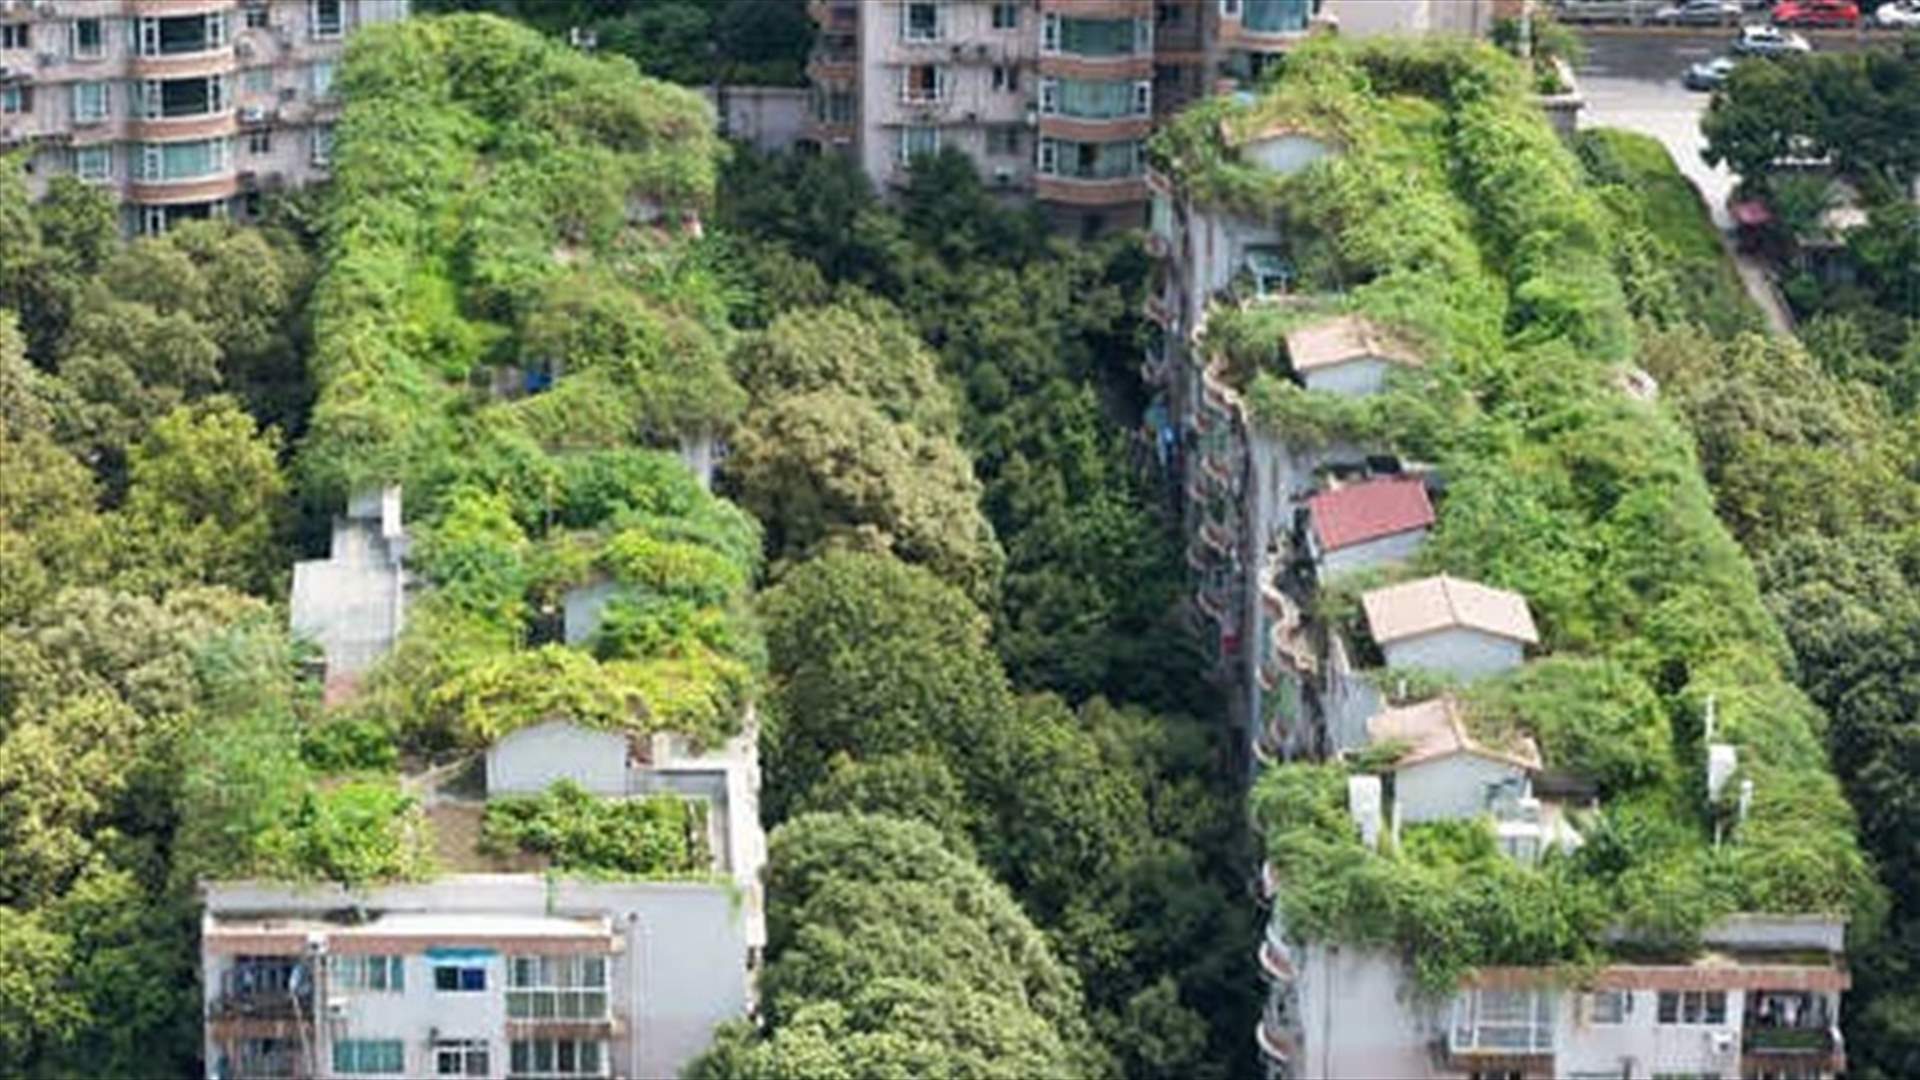 سكان الأحياء ذات الأشجار المورقة والخضراء يعيشون أطول